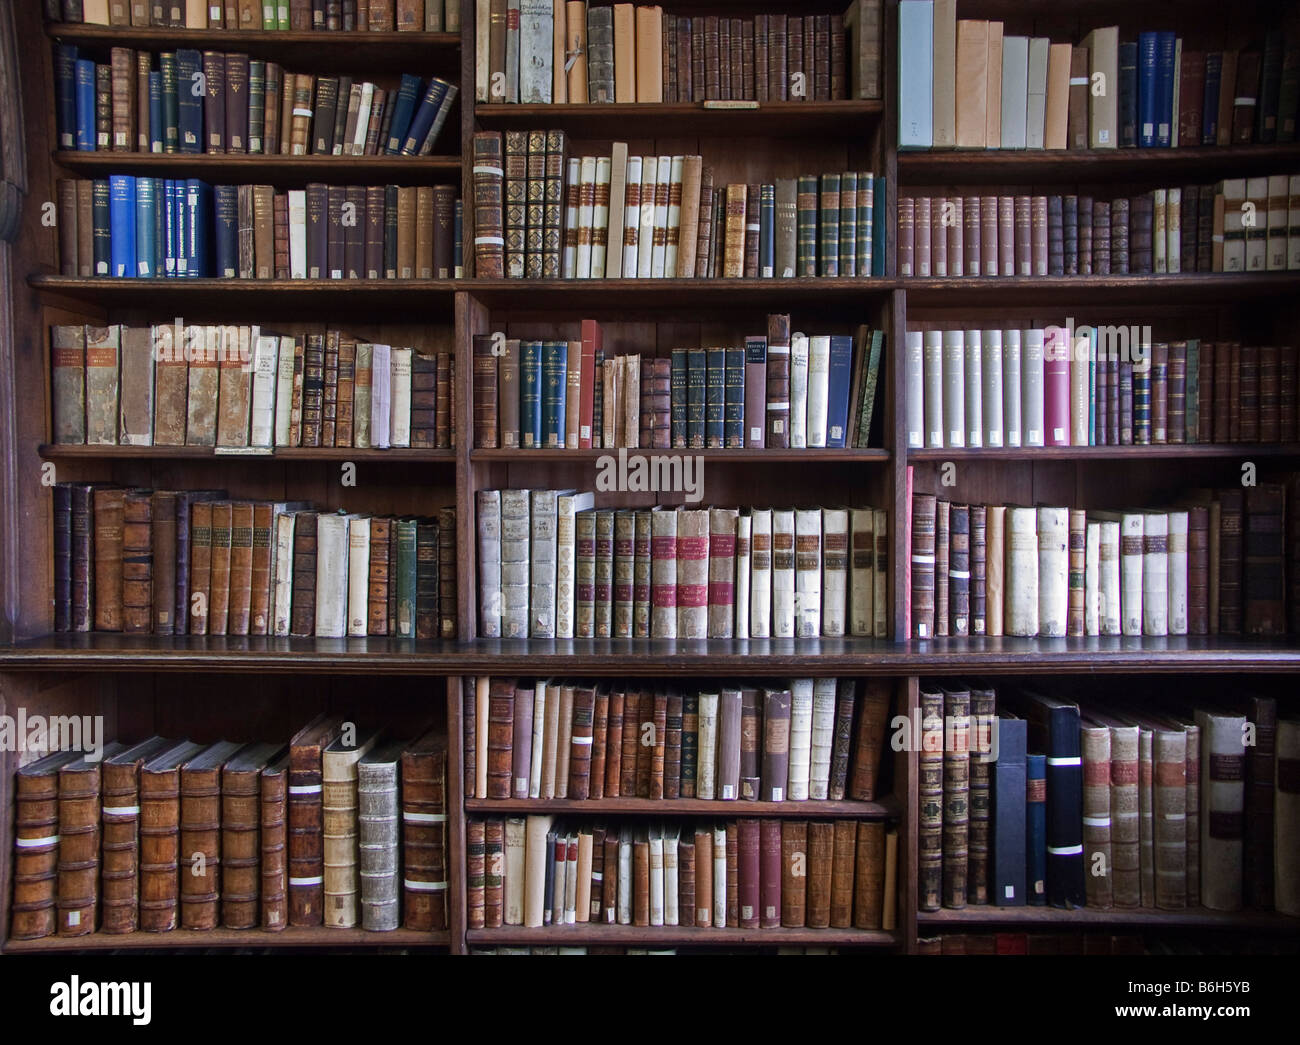 Vieux livres religieux dans une bibliothèque Catholique Photo Stock - Alamy